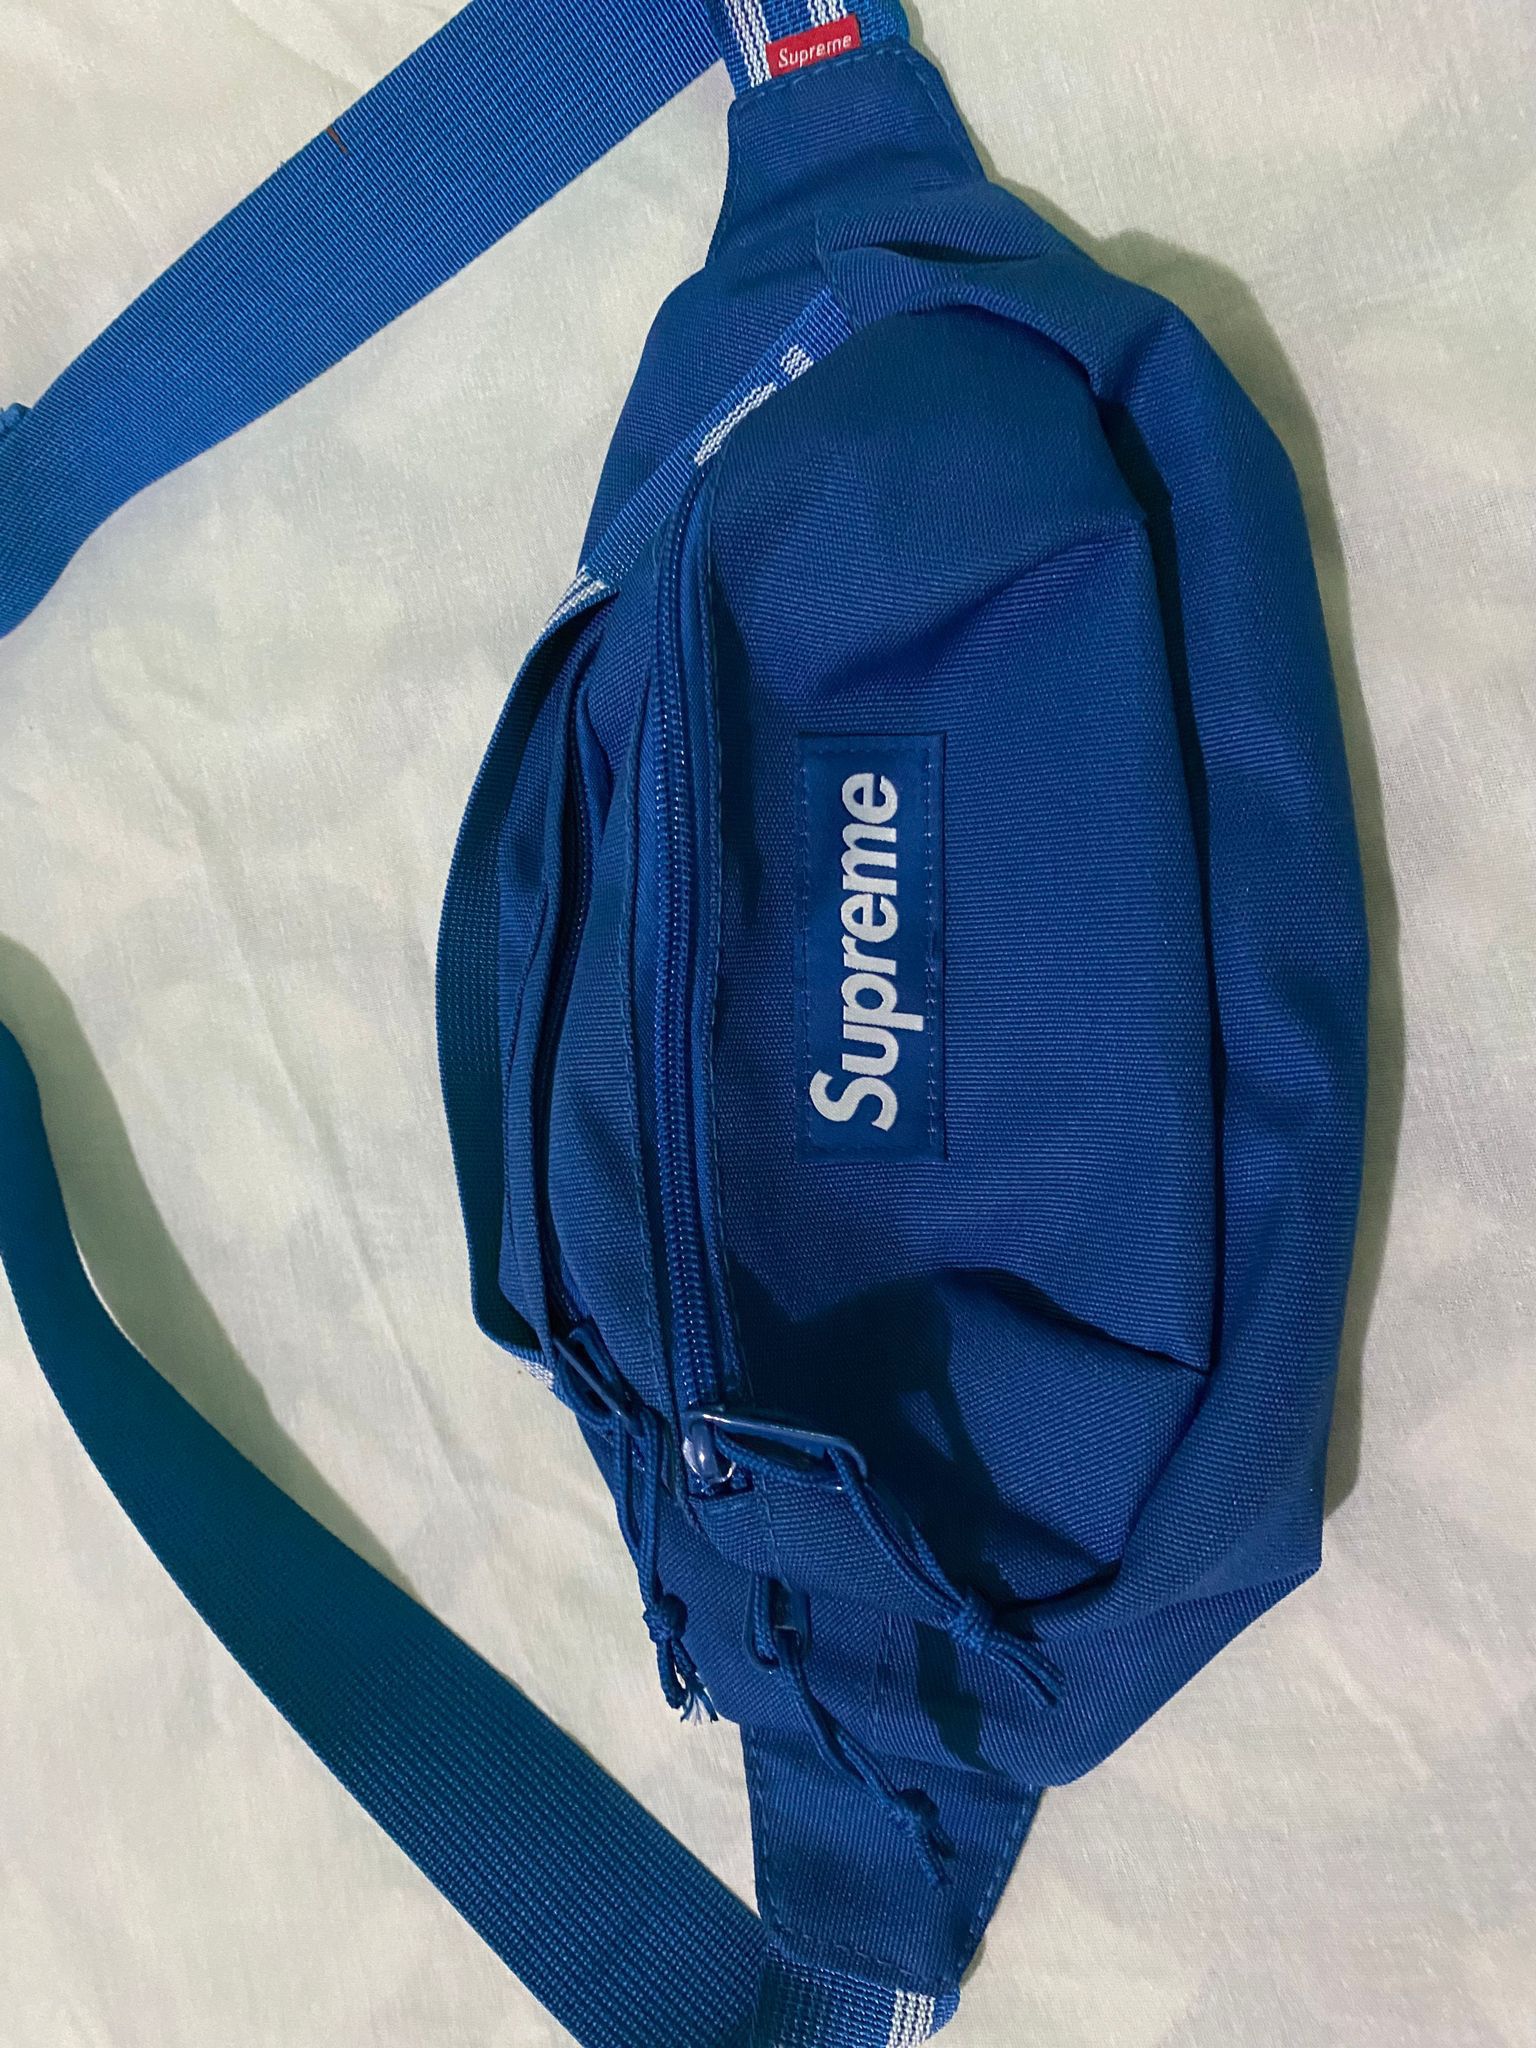 Supreme Waist Bag - Blue Waist Bags, Bags - WSPME65333